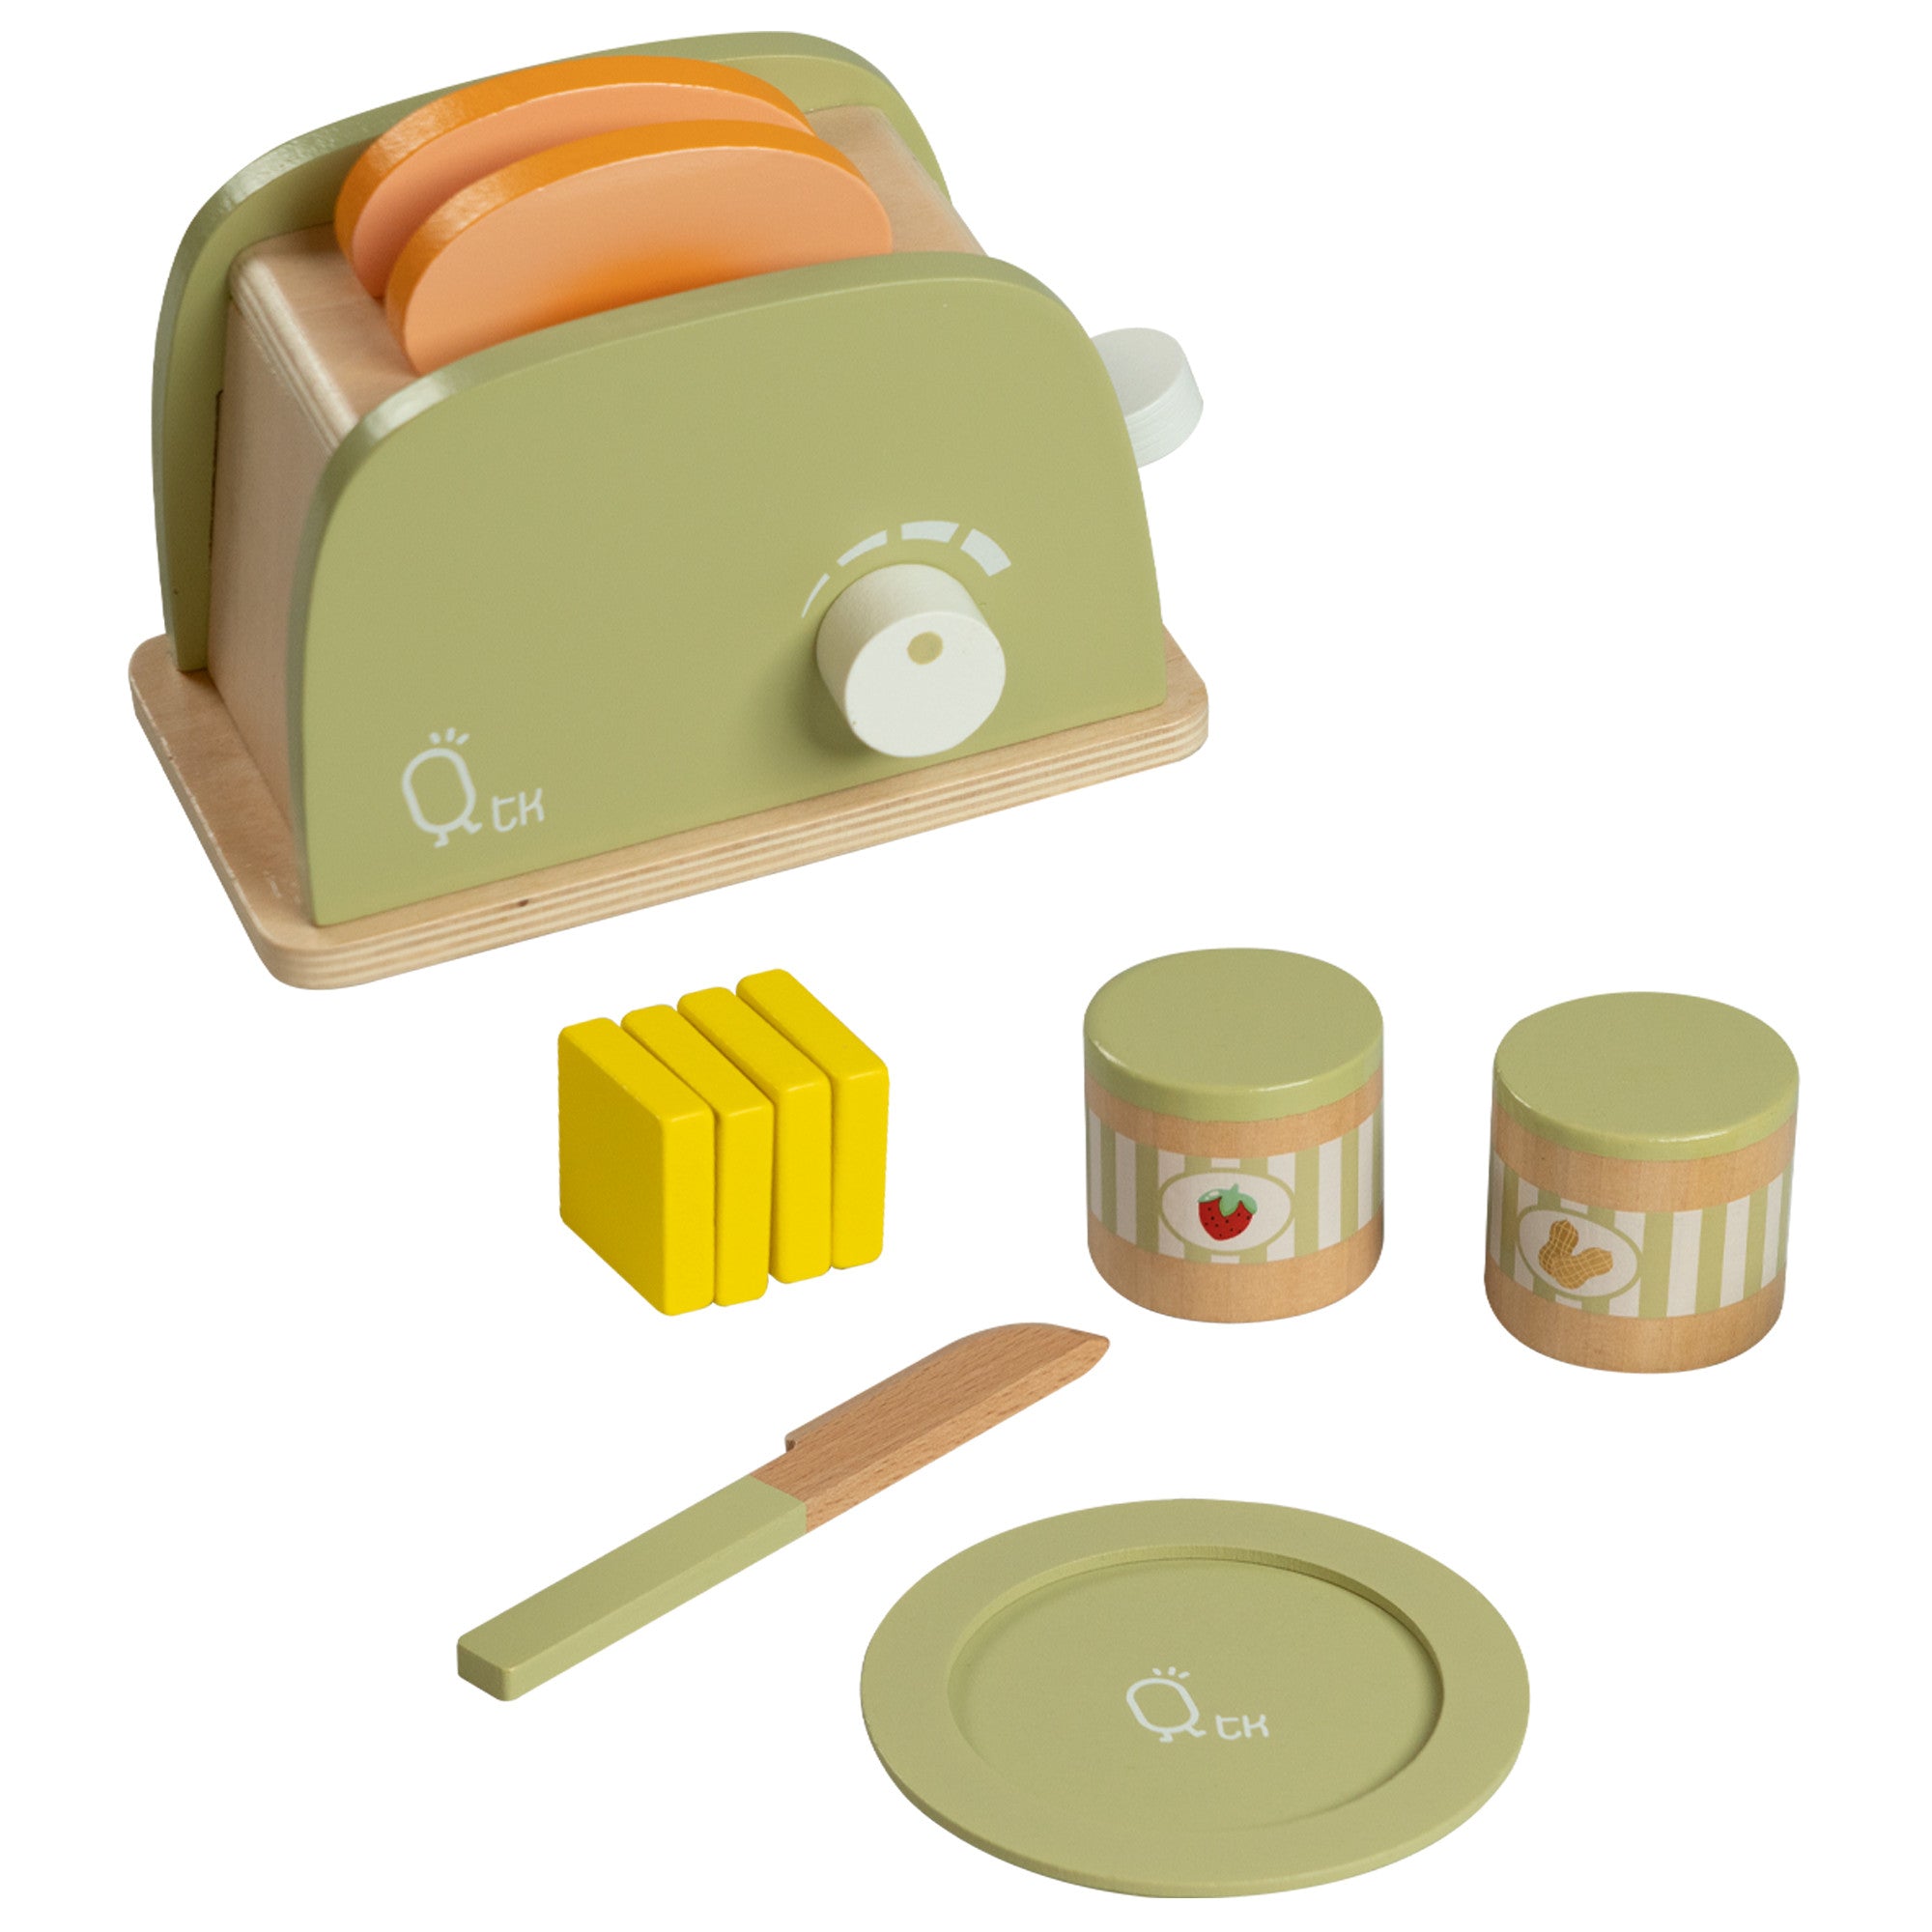 Teamson Kids Wooden Blender Play Kitchen Toy Accessories Green 13